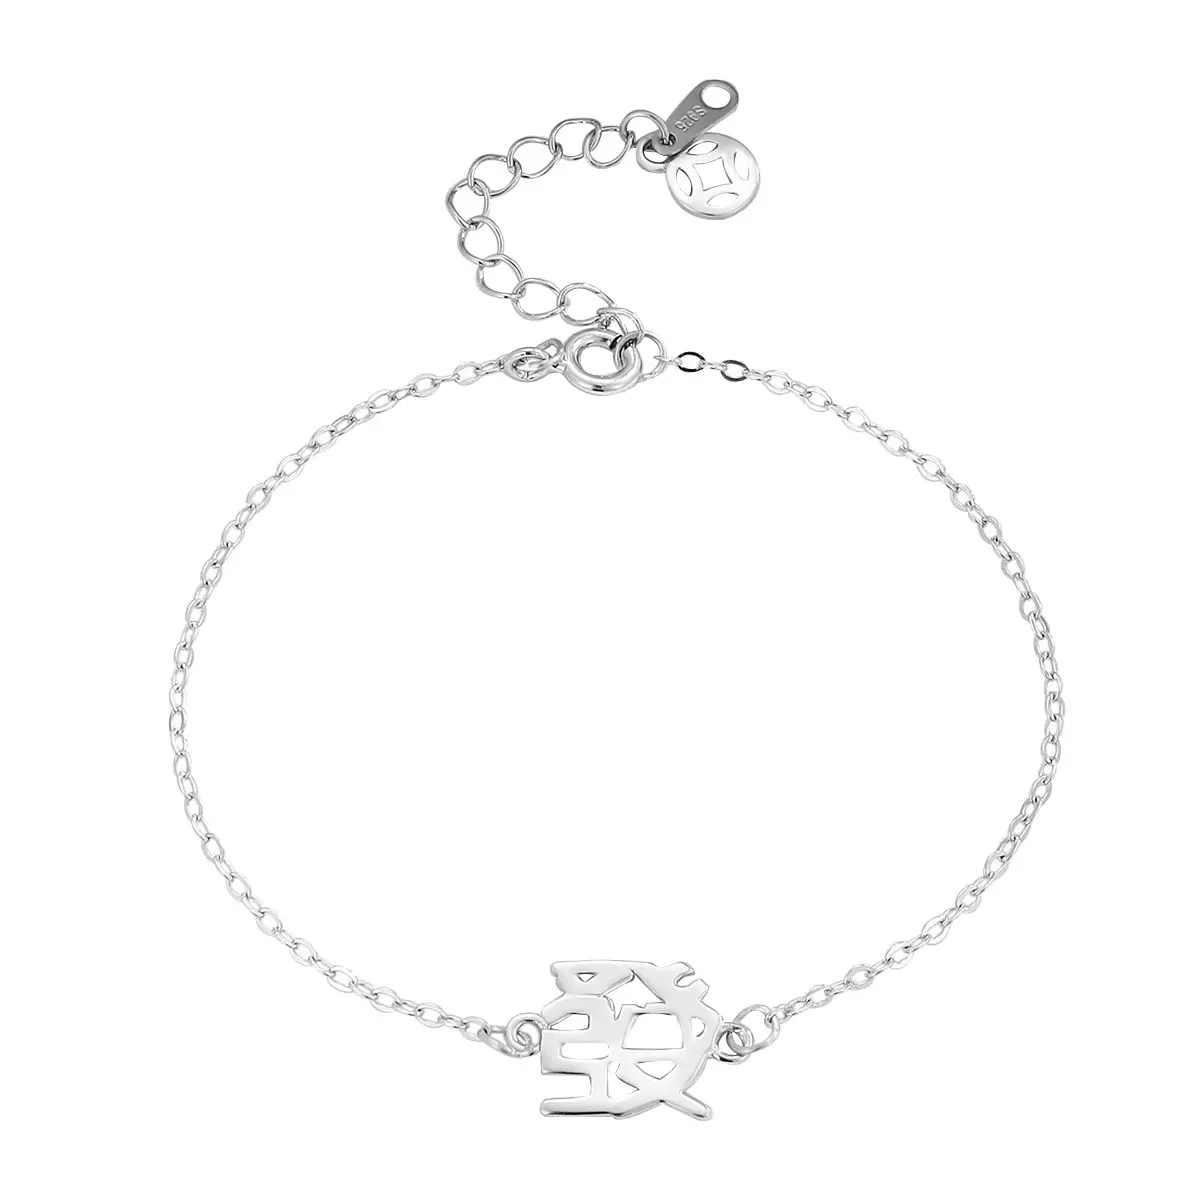 S925 Bracelet à breloques en argent sterling unisexe caractère chinois 'FA' Mean Fortune Creative avec un style mignon pour un cadeau ou une fête